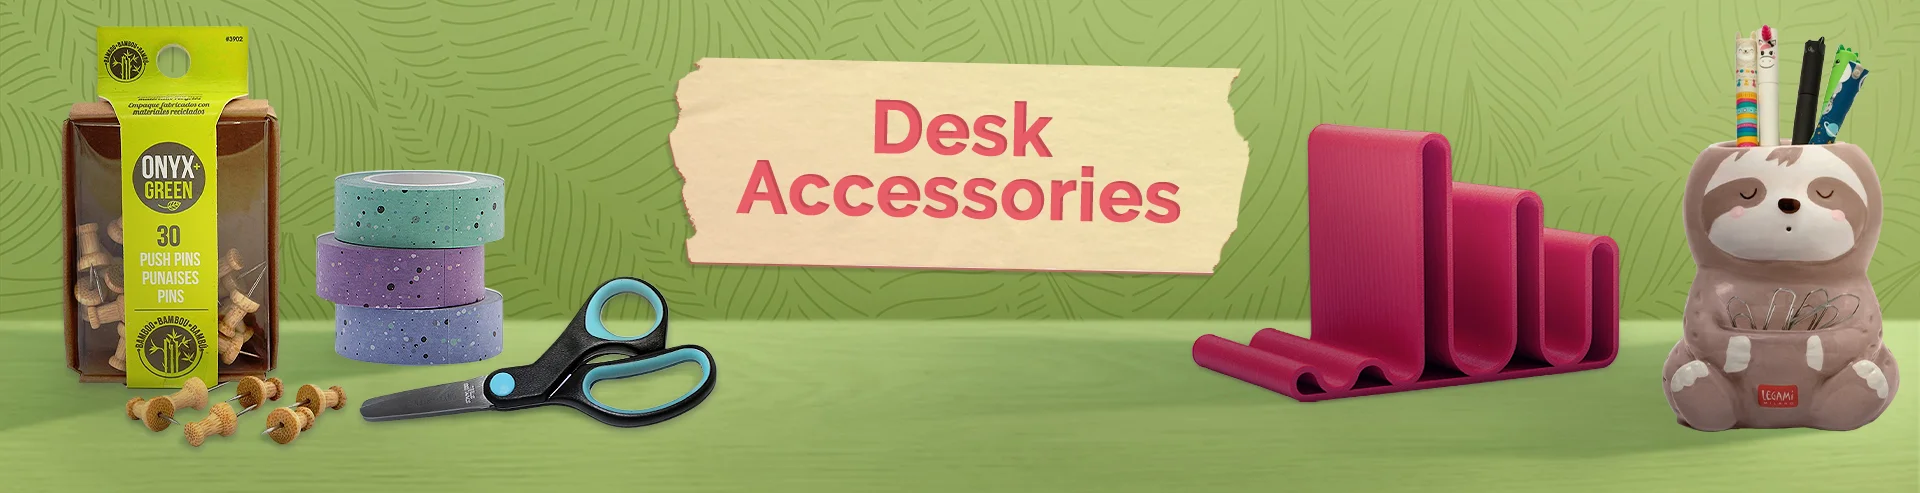 VM-Hero-Desk Accessories-1920x493.webp